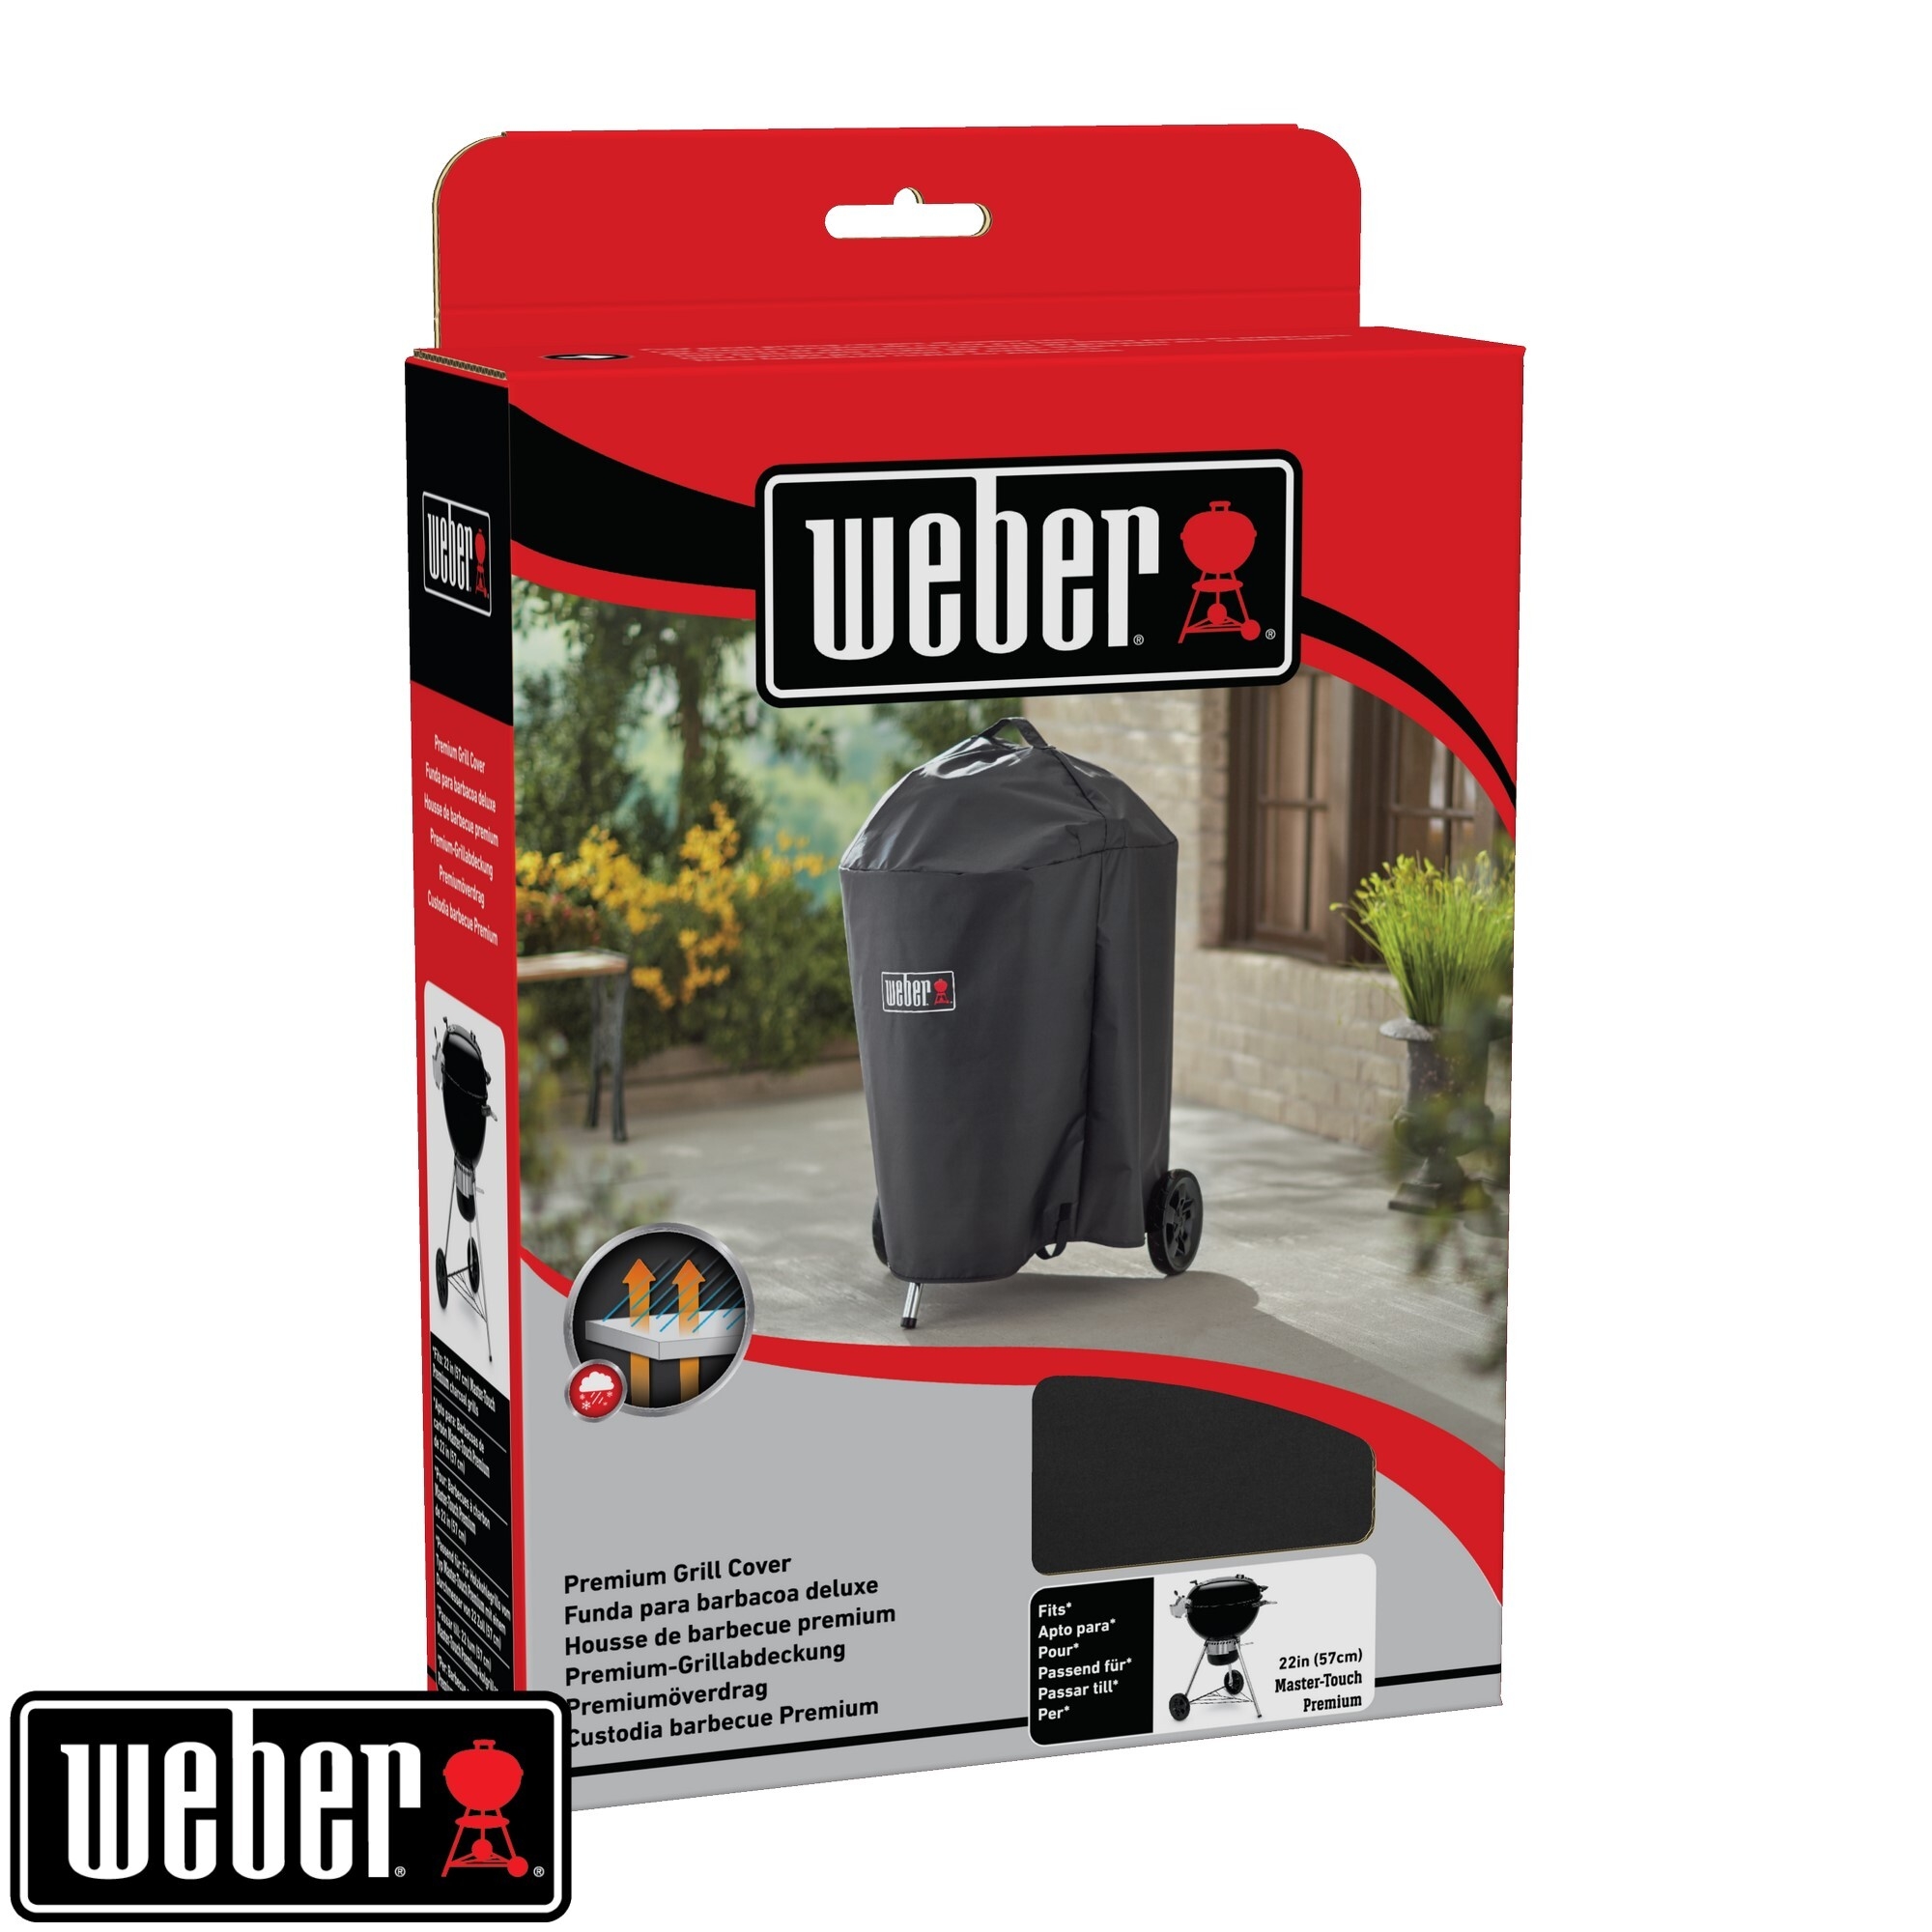 Weber Premium Abdeckhaube für Master Touch Premium